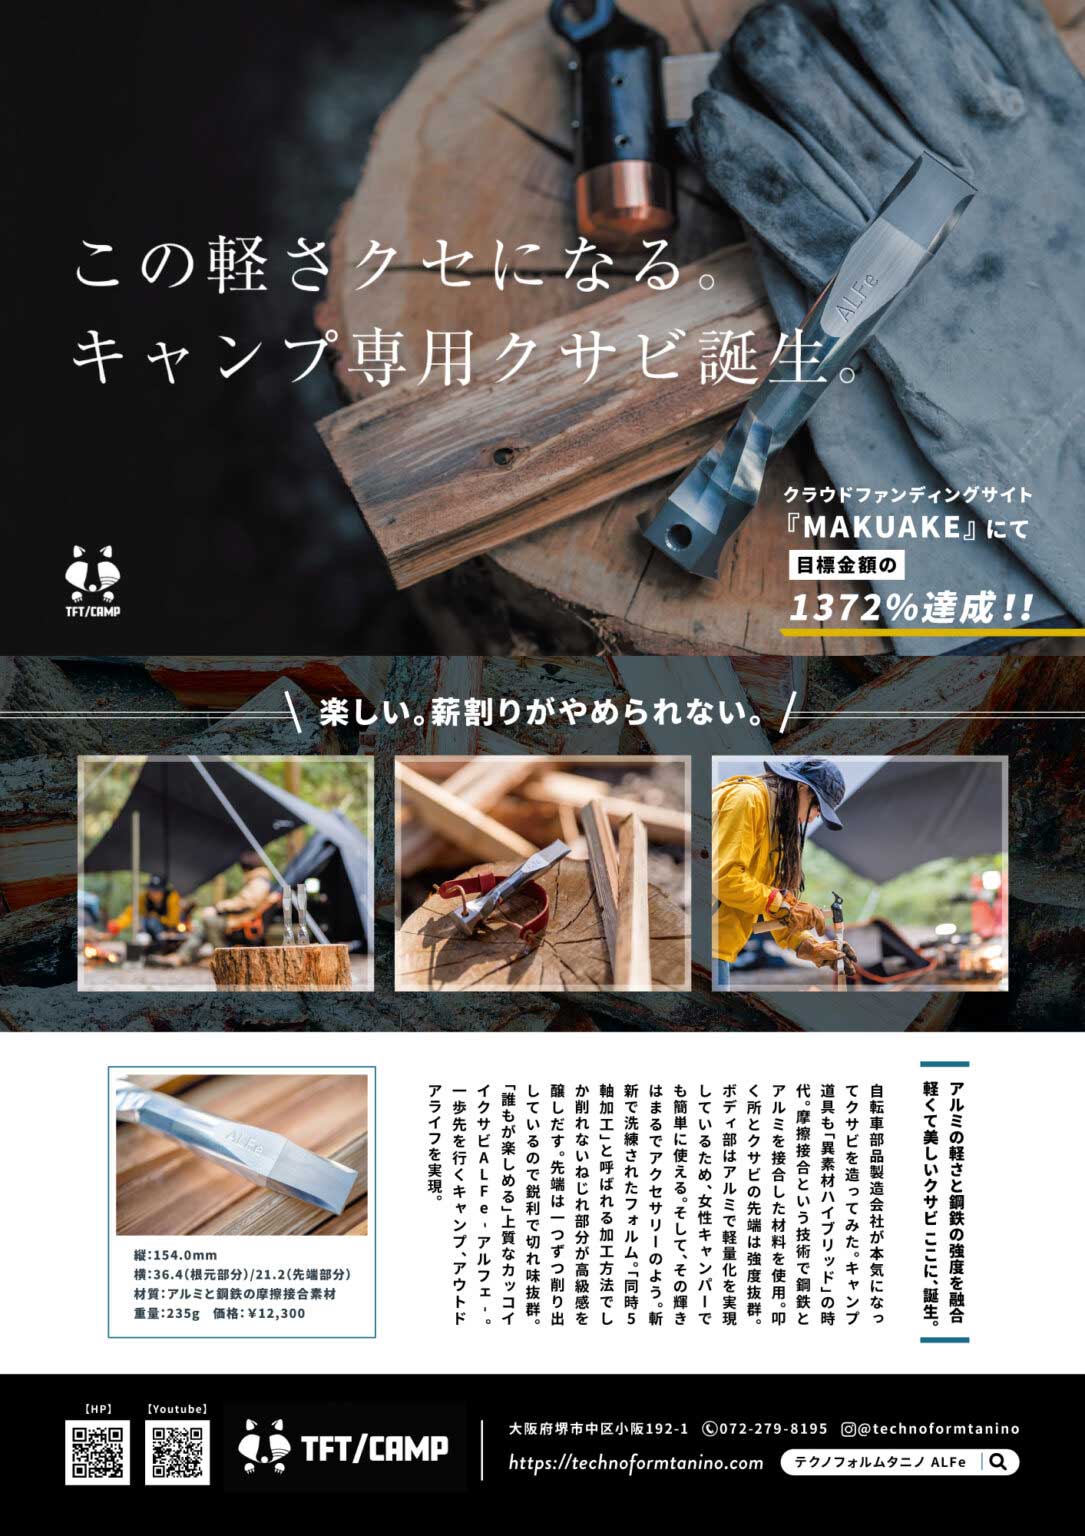 the article from the magazine 'Setagaya Base'